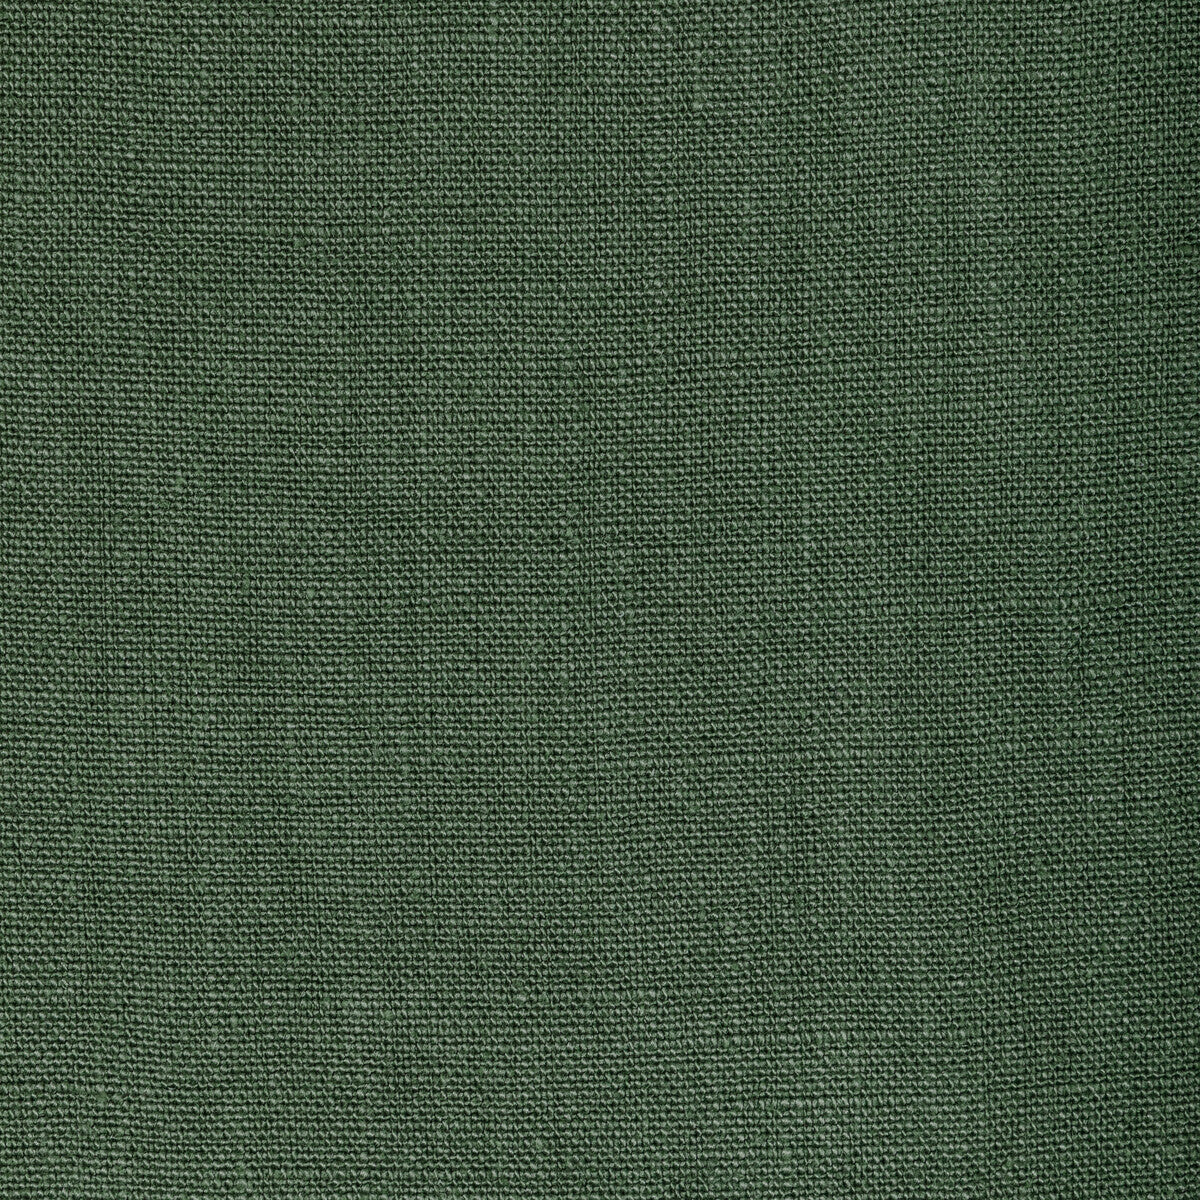 Kravet Basics fabric in 36332-3 color - pattern 36332.3.0 - by Kravet Basics